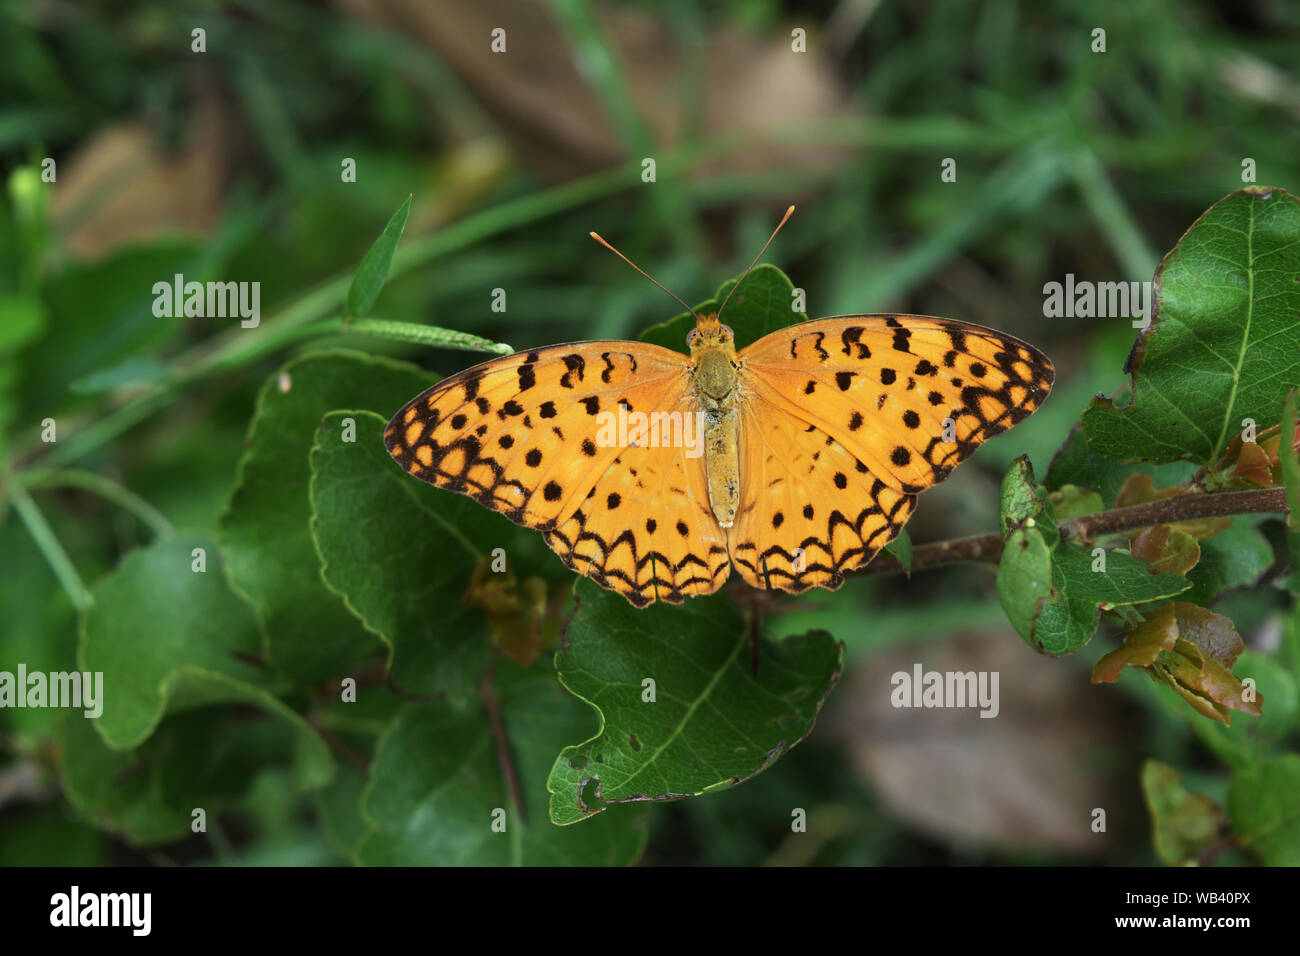 Rayures noires sur les ailes de couleur orange d'insectes tropicaux , la politique Leopard papillon sur fond vert naturel avec arbres Banque D'Images